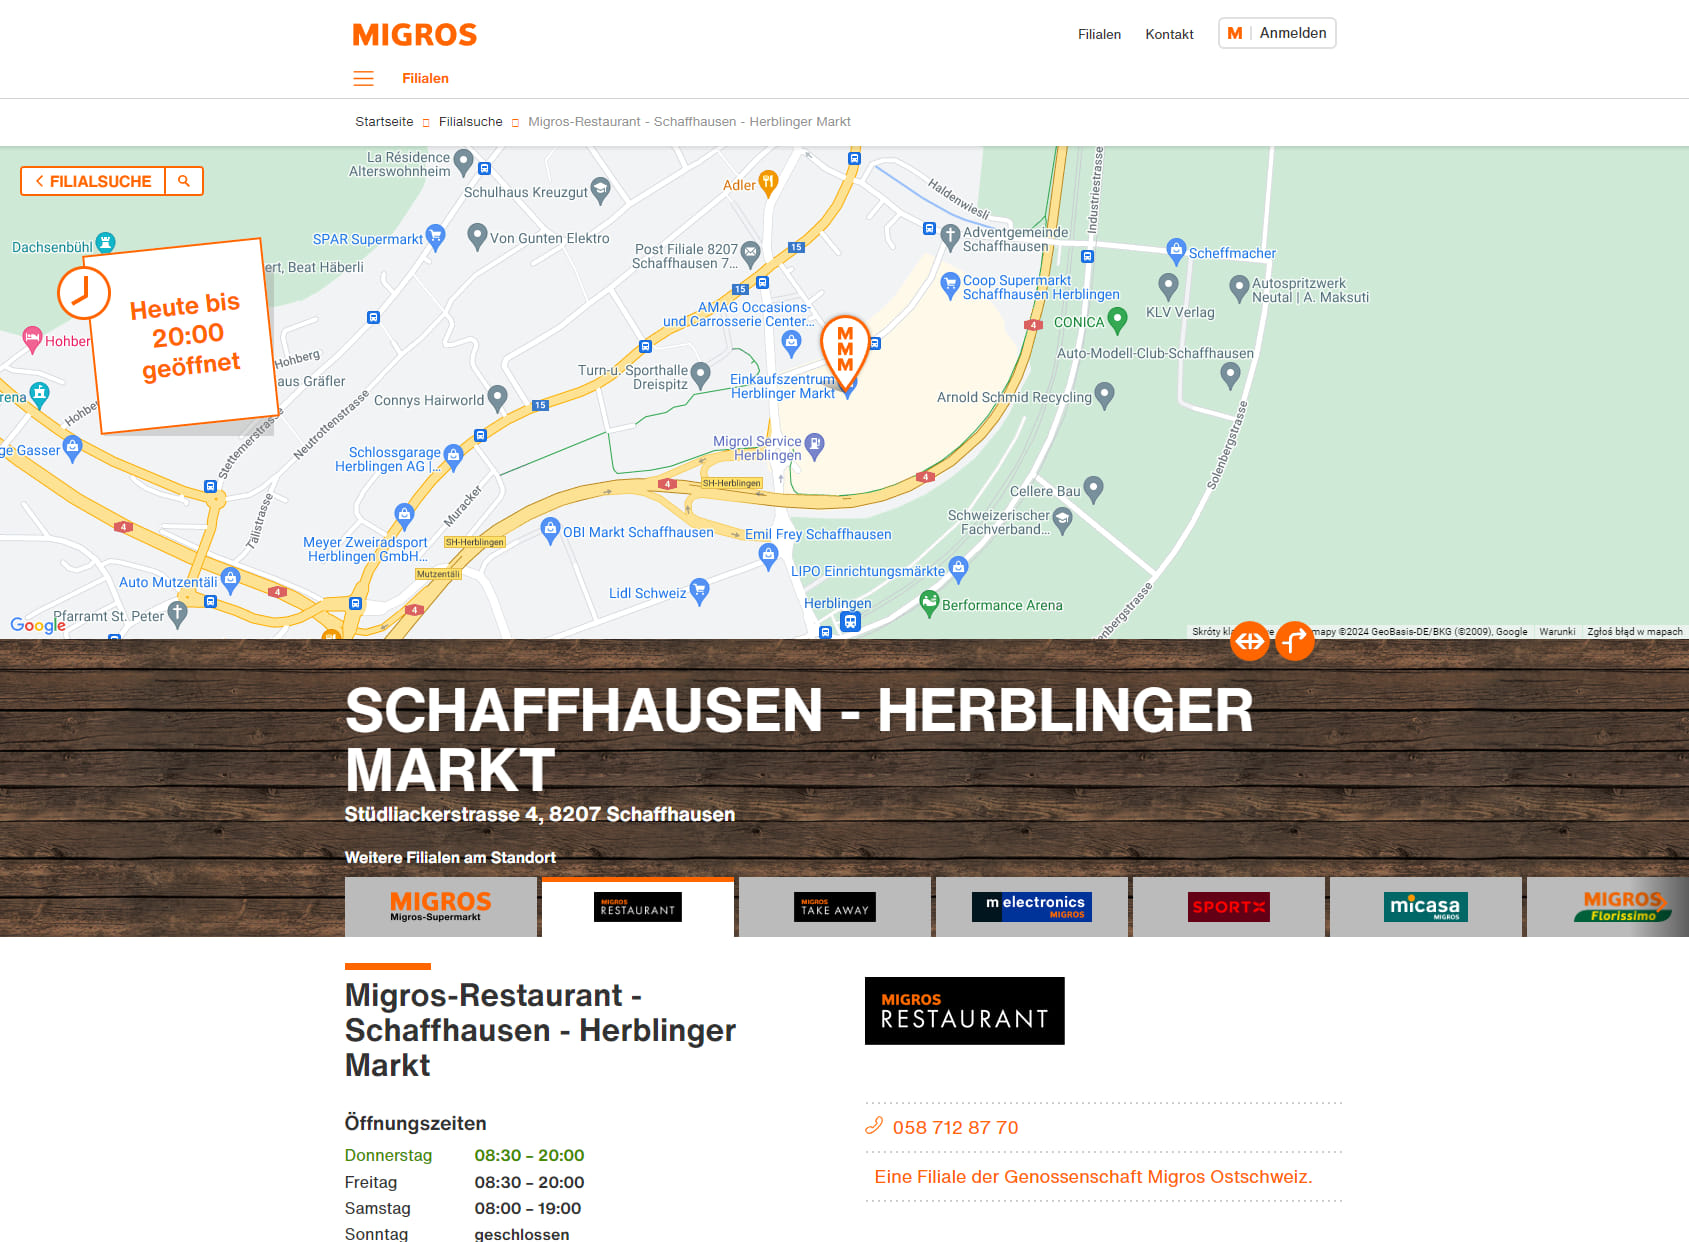 Migros-Restaurant - Schaffhausen - Herblinger Markt